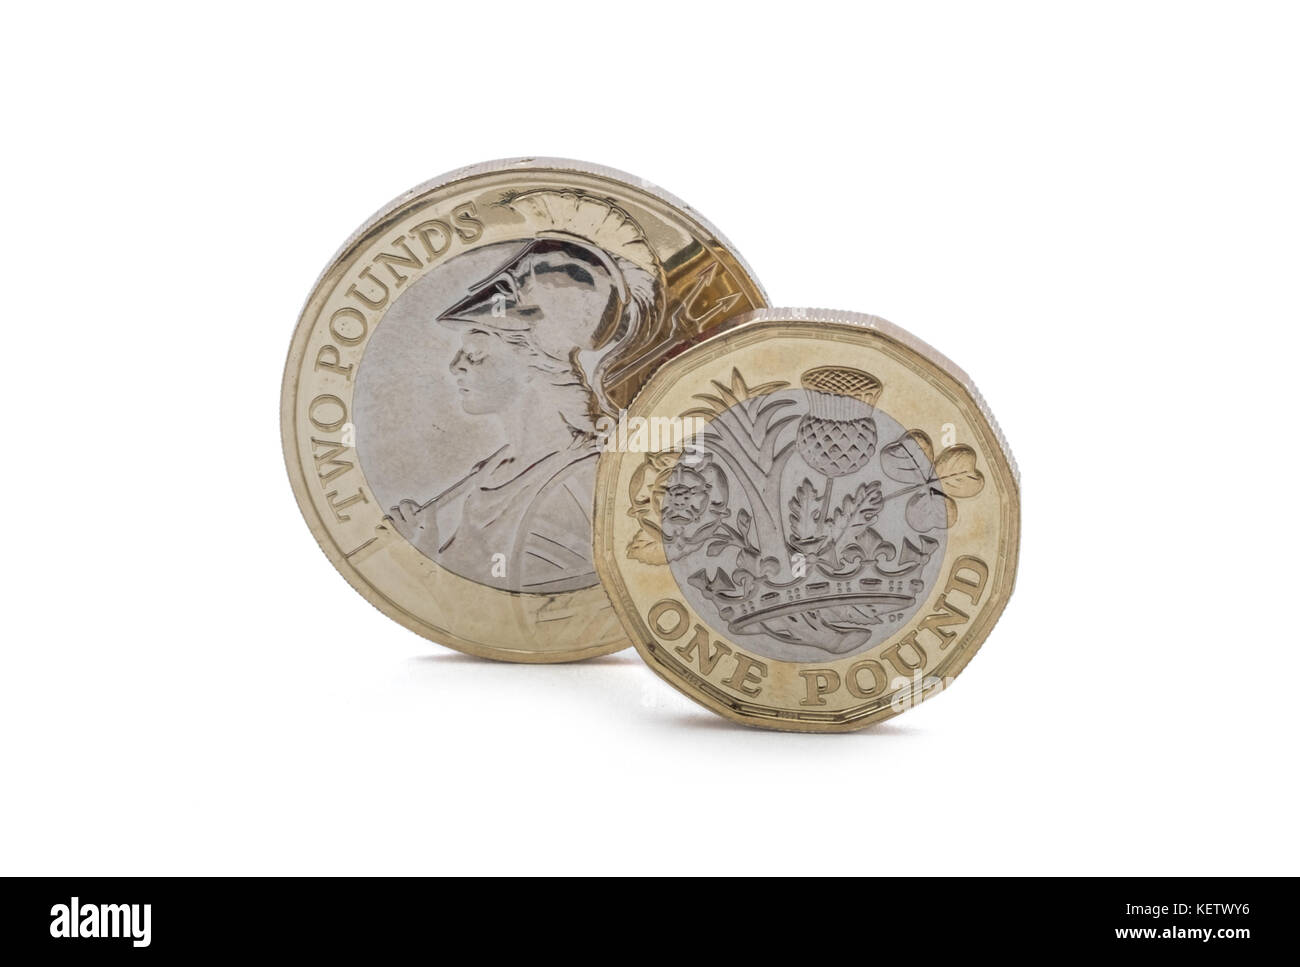 Neue Designs für britisches Geld, der neuen Form der pound Münze in 2017 eingeführt werden. Stockfoto